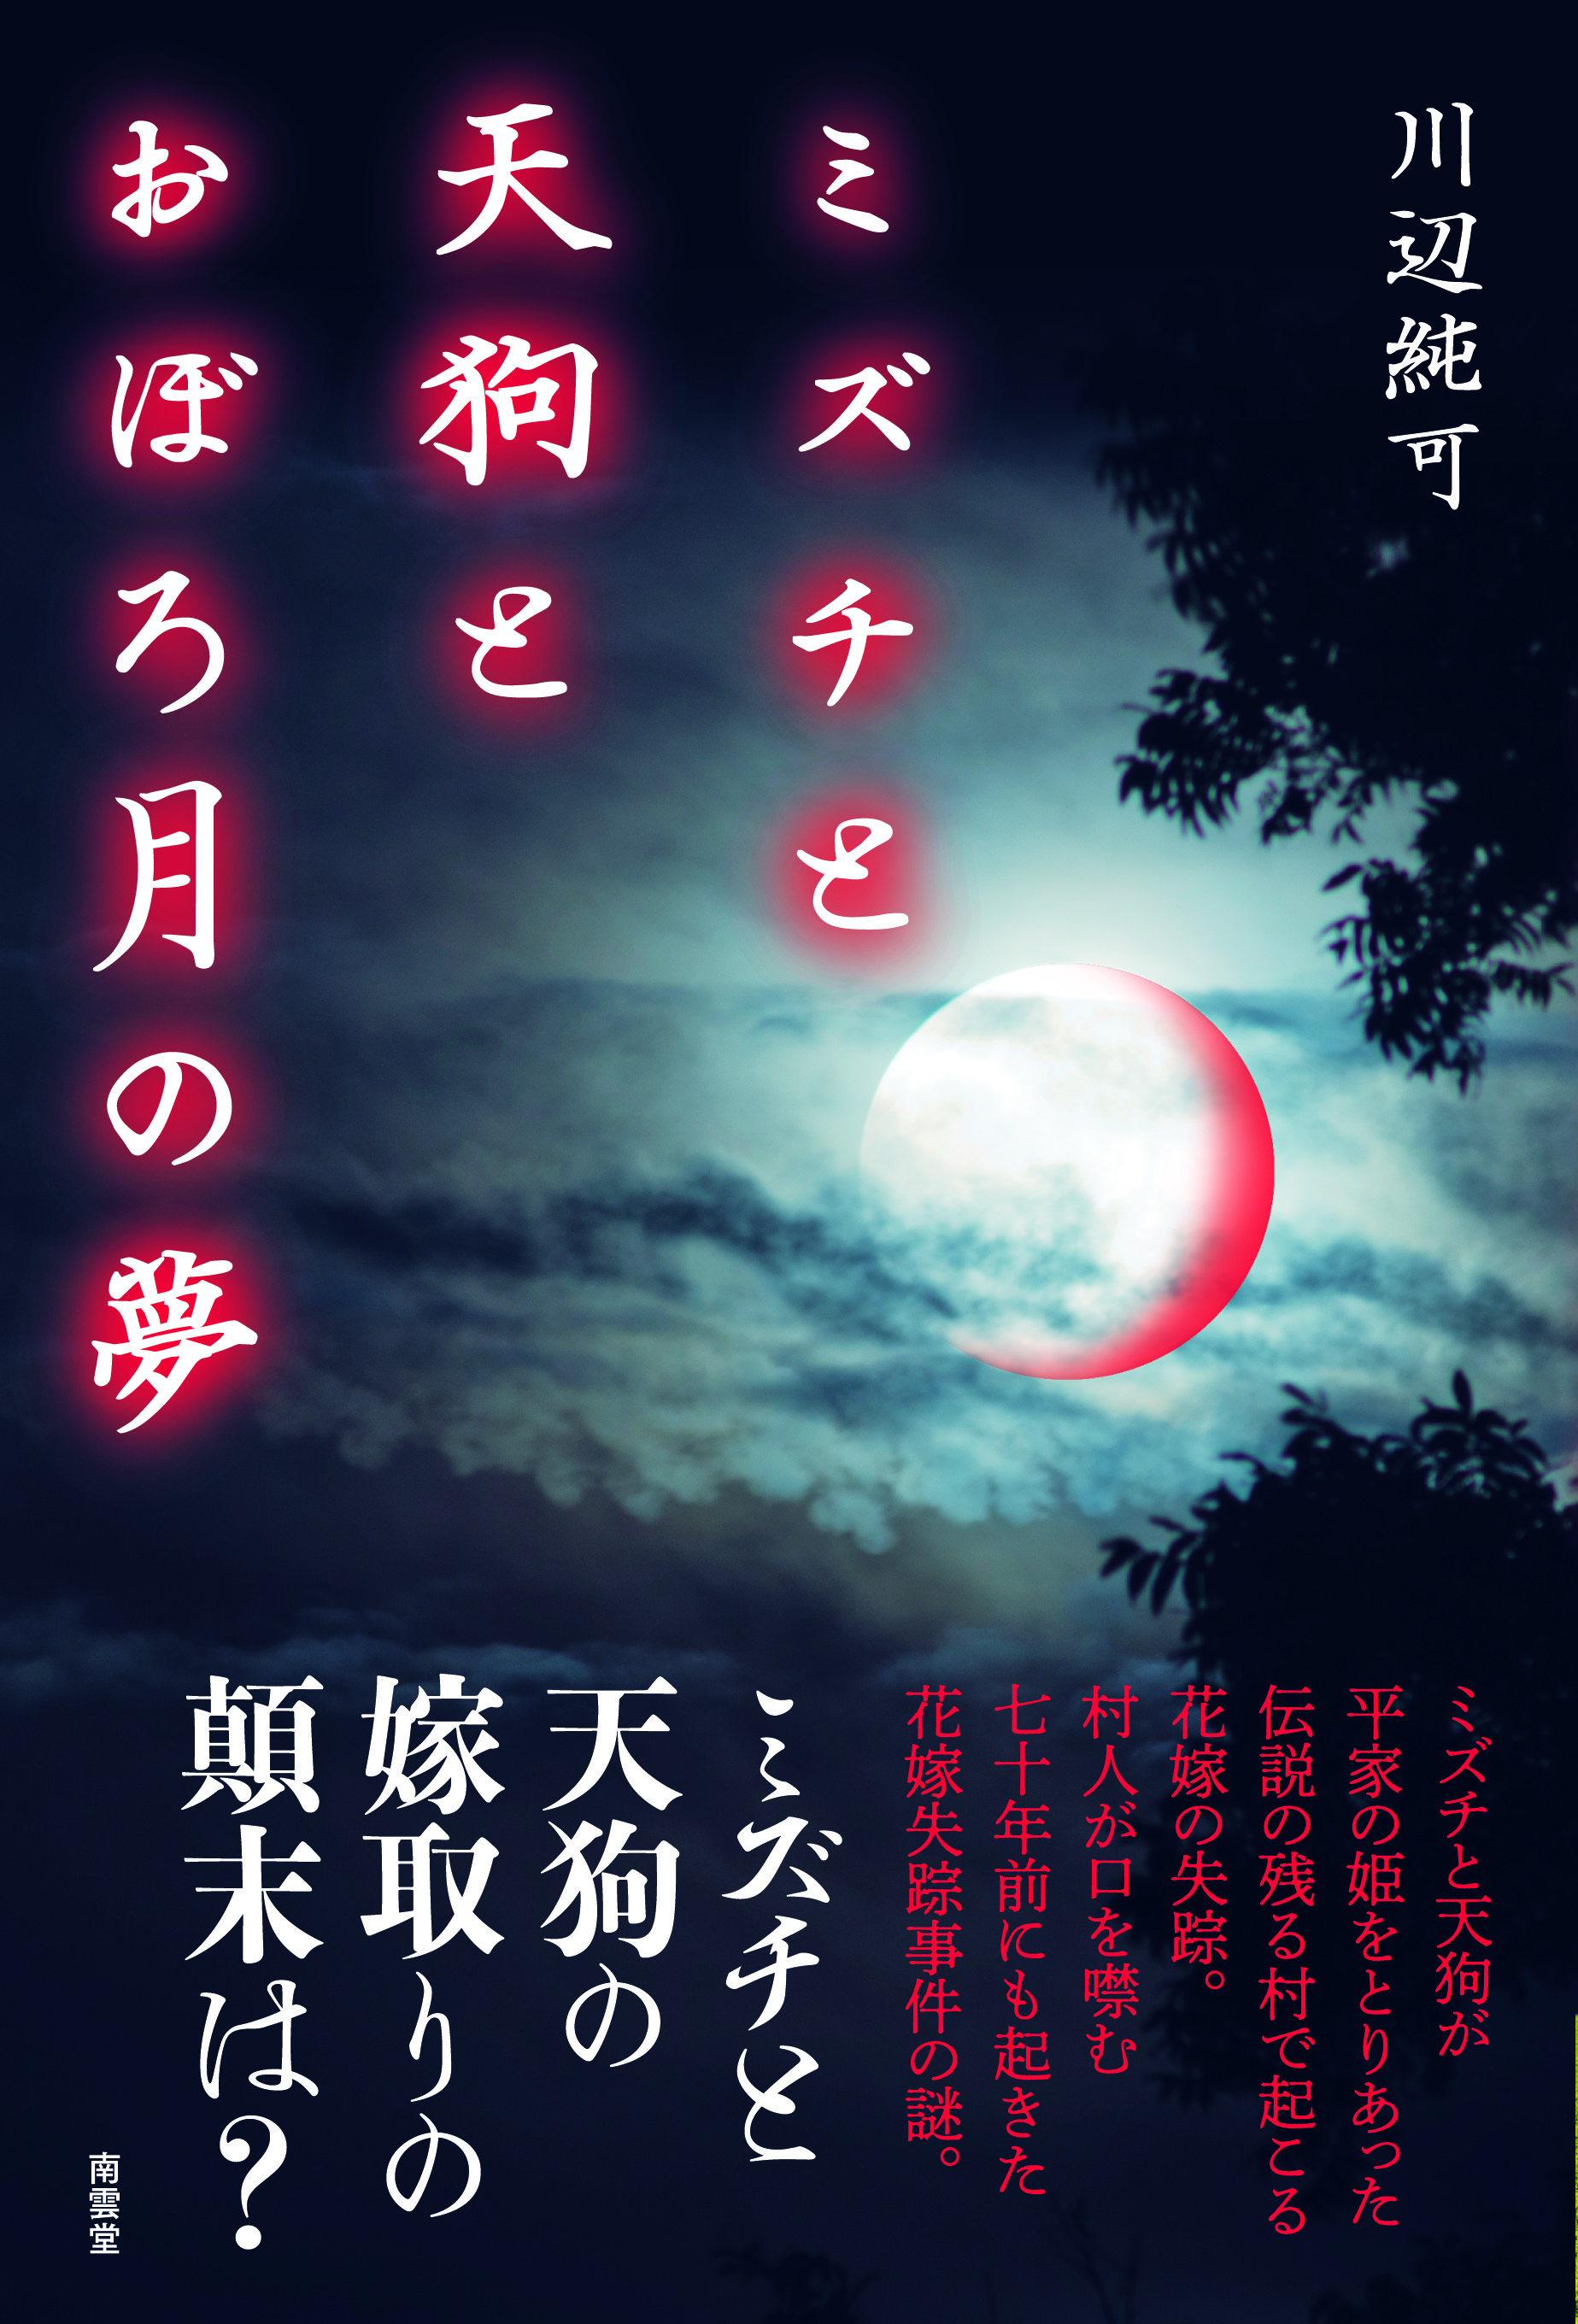 川辺純可『ミズチと天狗とおぼろ月の夢』8月5日頃発売予定